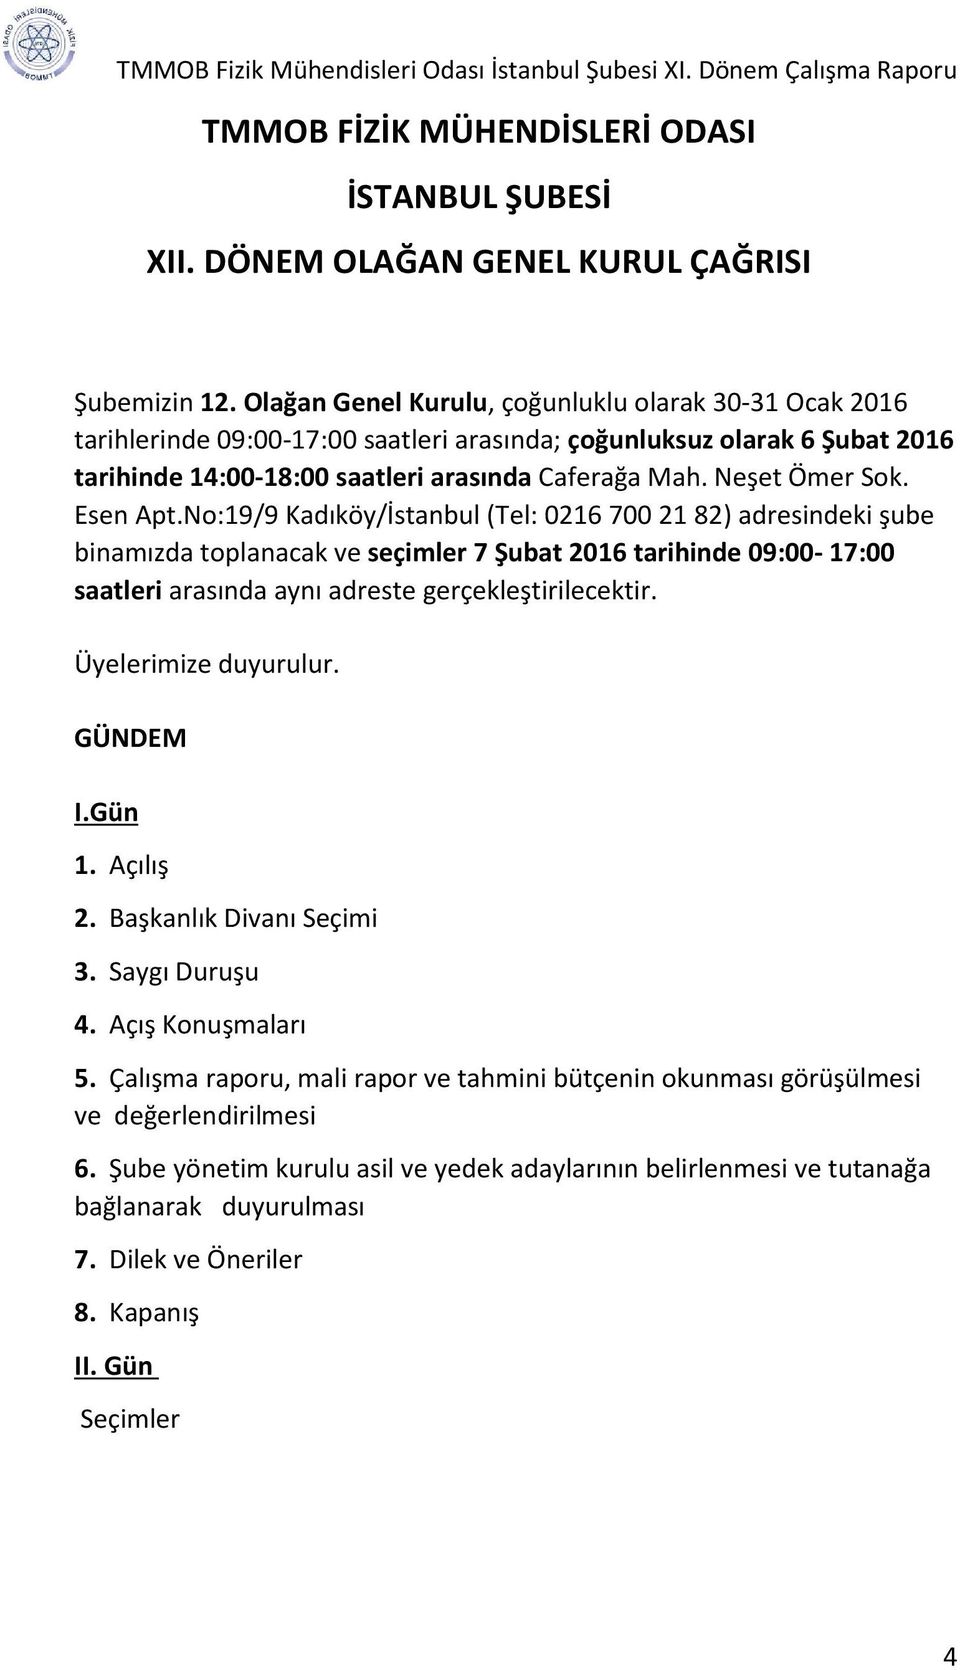 Esen Apt.No:19/9 Kadıköy/İstanbul (Tel: 0216 700 21 82) adresindeki şube binamızda toplanacak ve seçimler 7 Şubat 2016 tarihinde 09:00-17:00 saatleri arasında aynı adreste gerçekleştirilecektir.